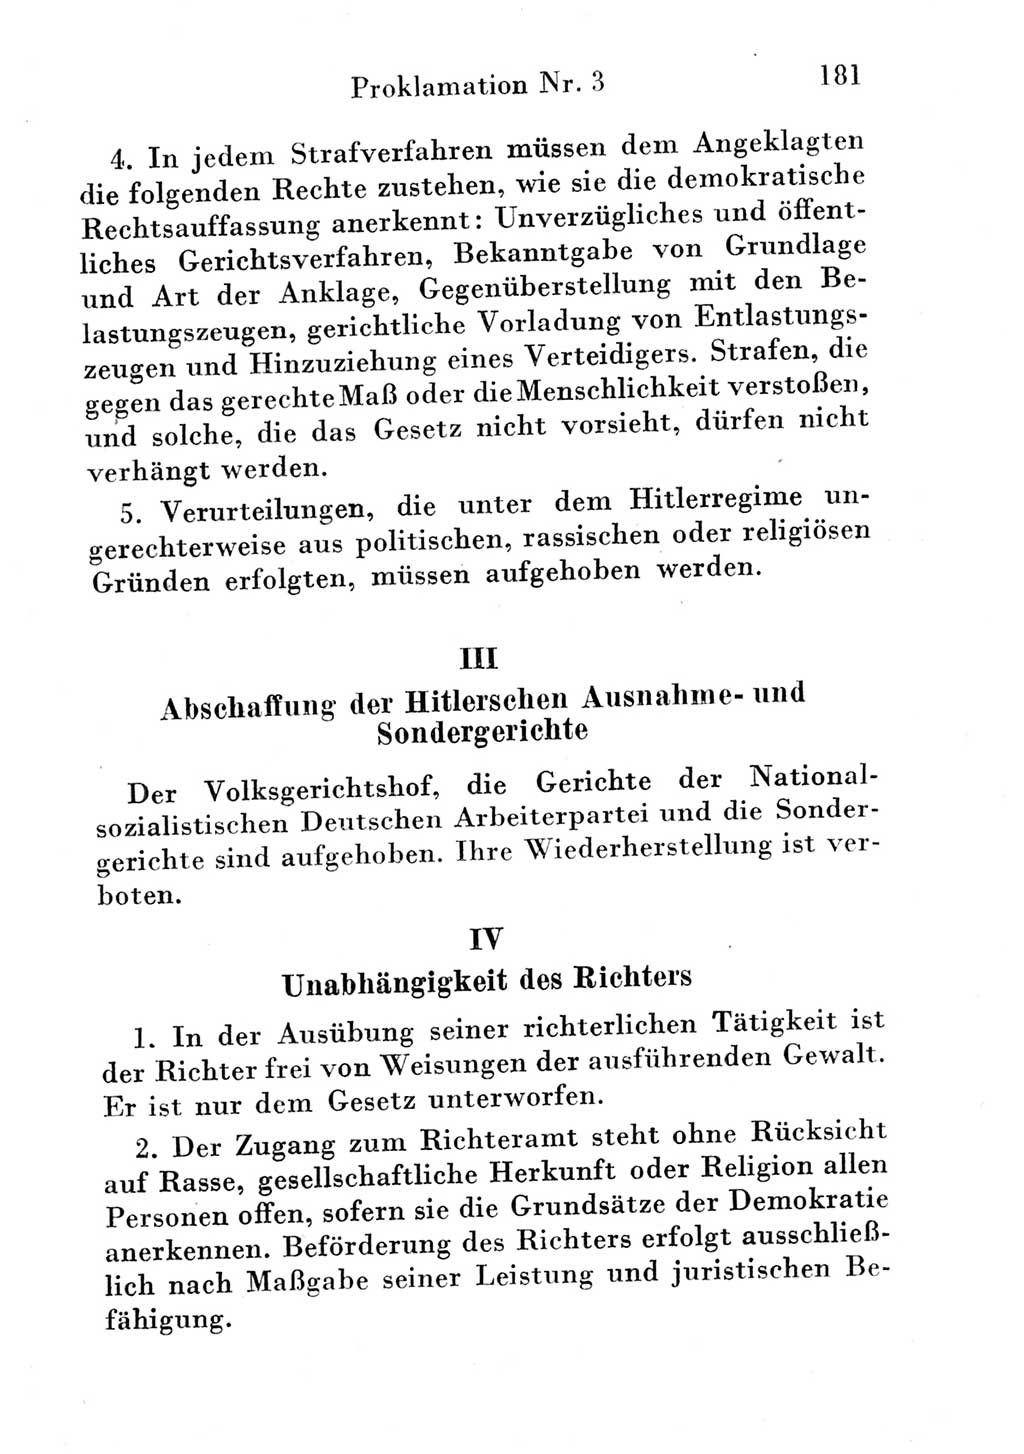 Strafgesetzbuch (StGB) und andere Strafgesetze [Deutsche Demokratische Republik (DDR)] 1951, Seite 181 (StGB Strafges. DDR 1951, S. 181)